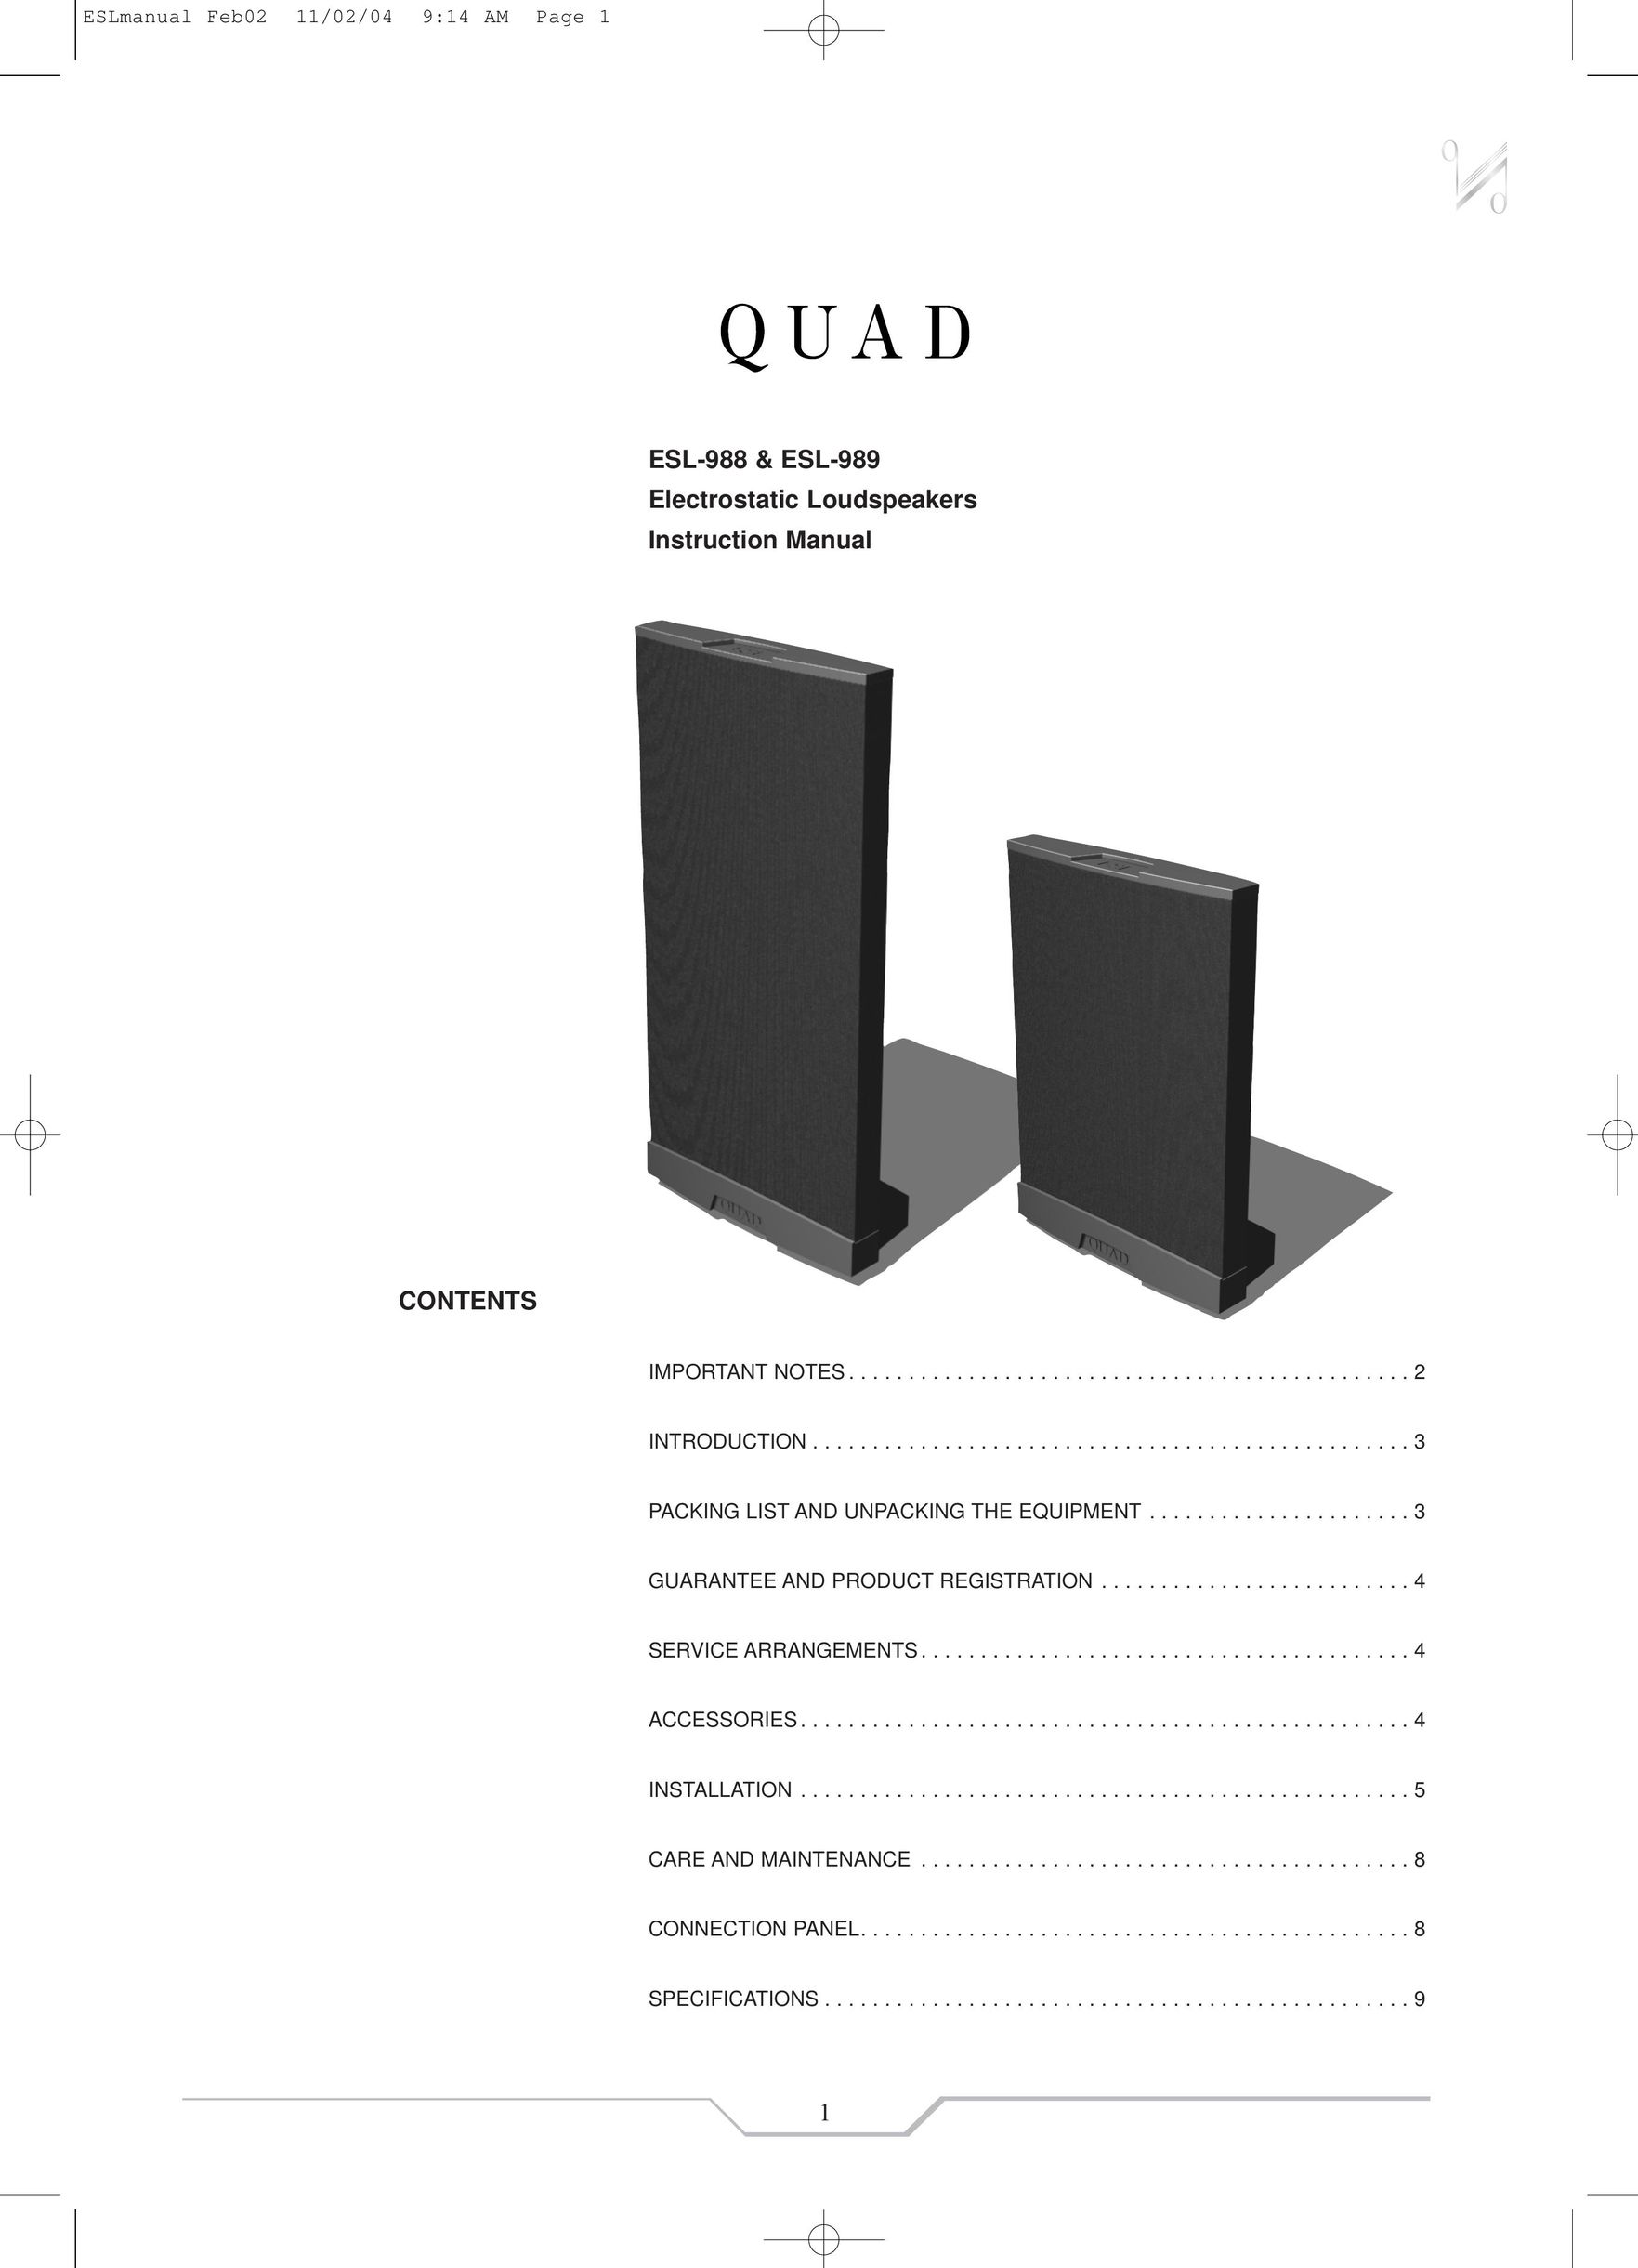 QUAD ESL-989 Speaker User Manual